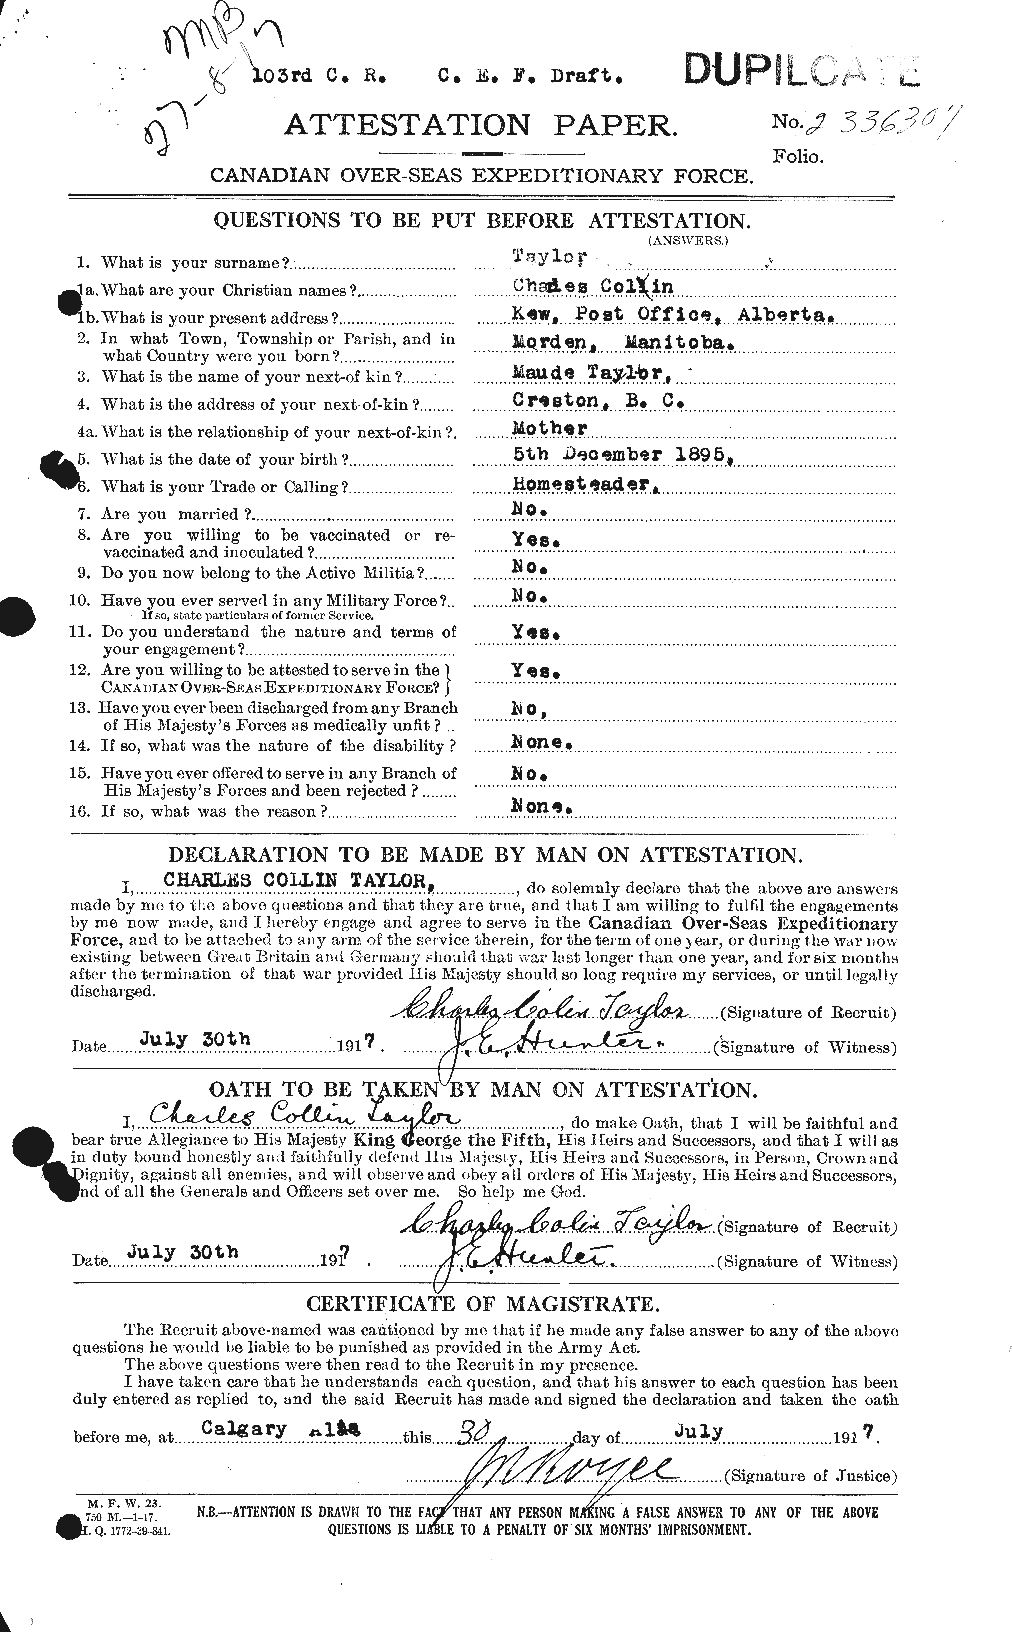 Dossiers du Personnel de la Première Guerre mondiale - CEC 626834a